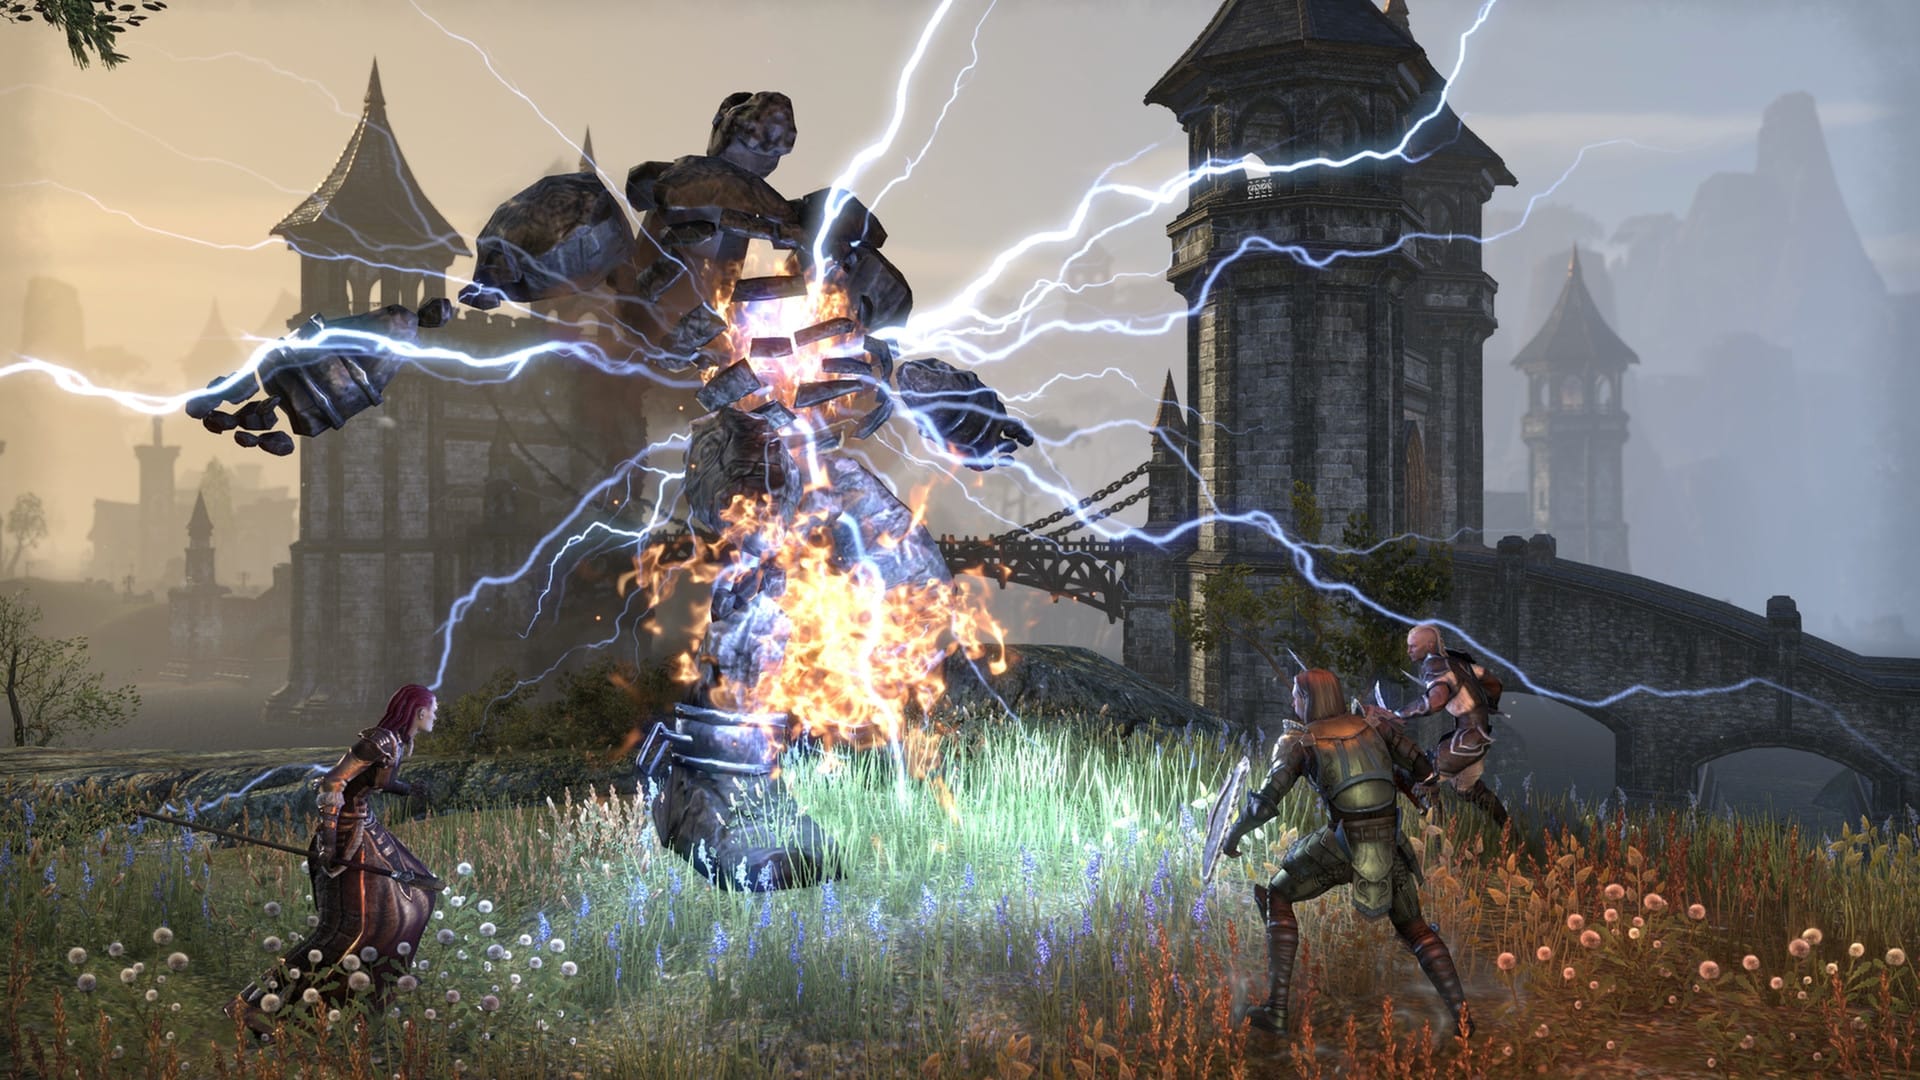 بهترین بازی های MMORPG: Elder Scrolls Online. تصویر یک مهمانی از سه شخصیت را نشان می دهد که در برابر یک موجود بزرگ سنگی با برق که از آن بیرون می آید ، ظاهر می شوند